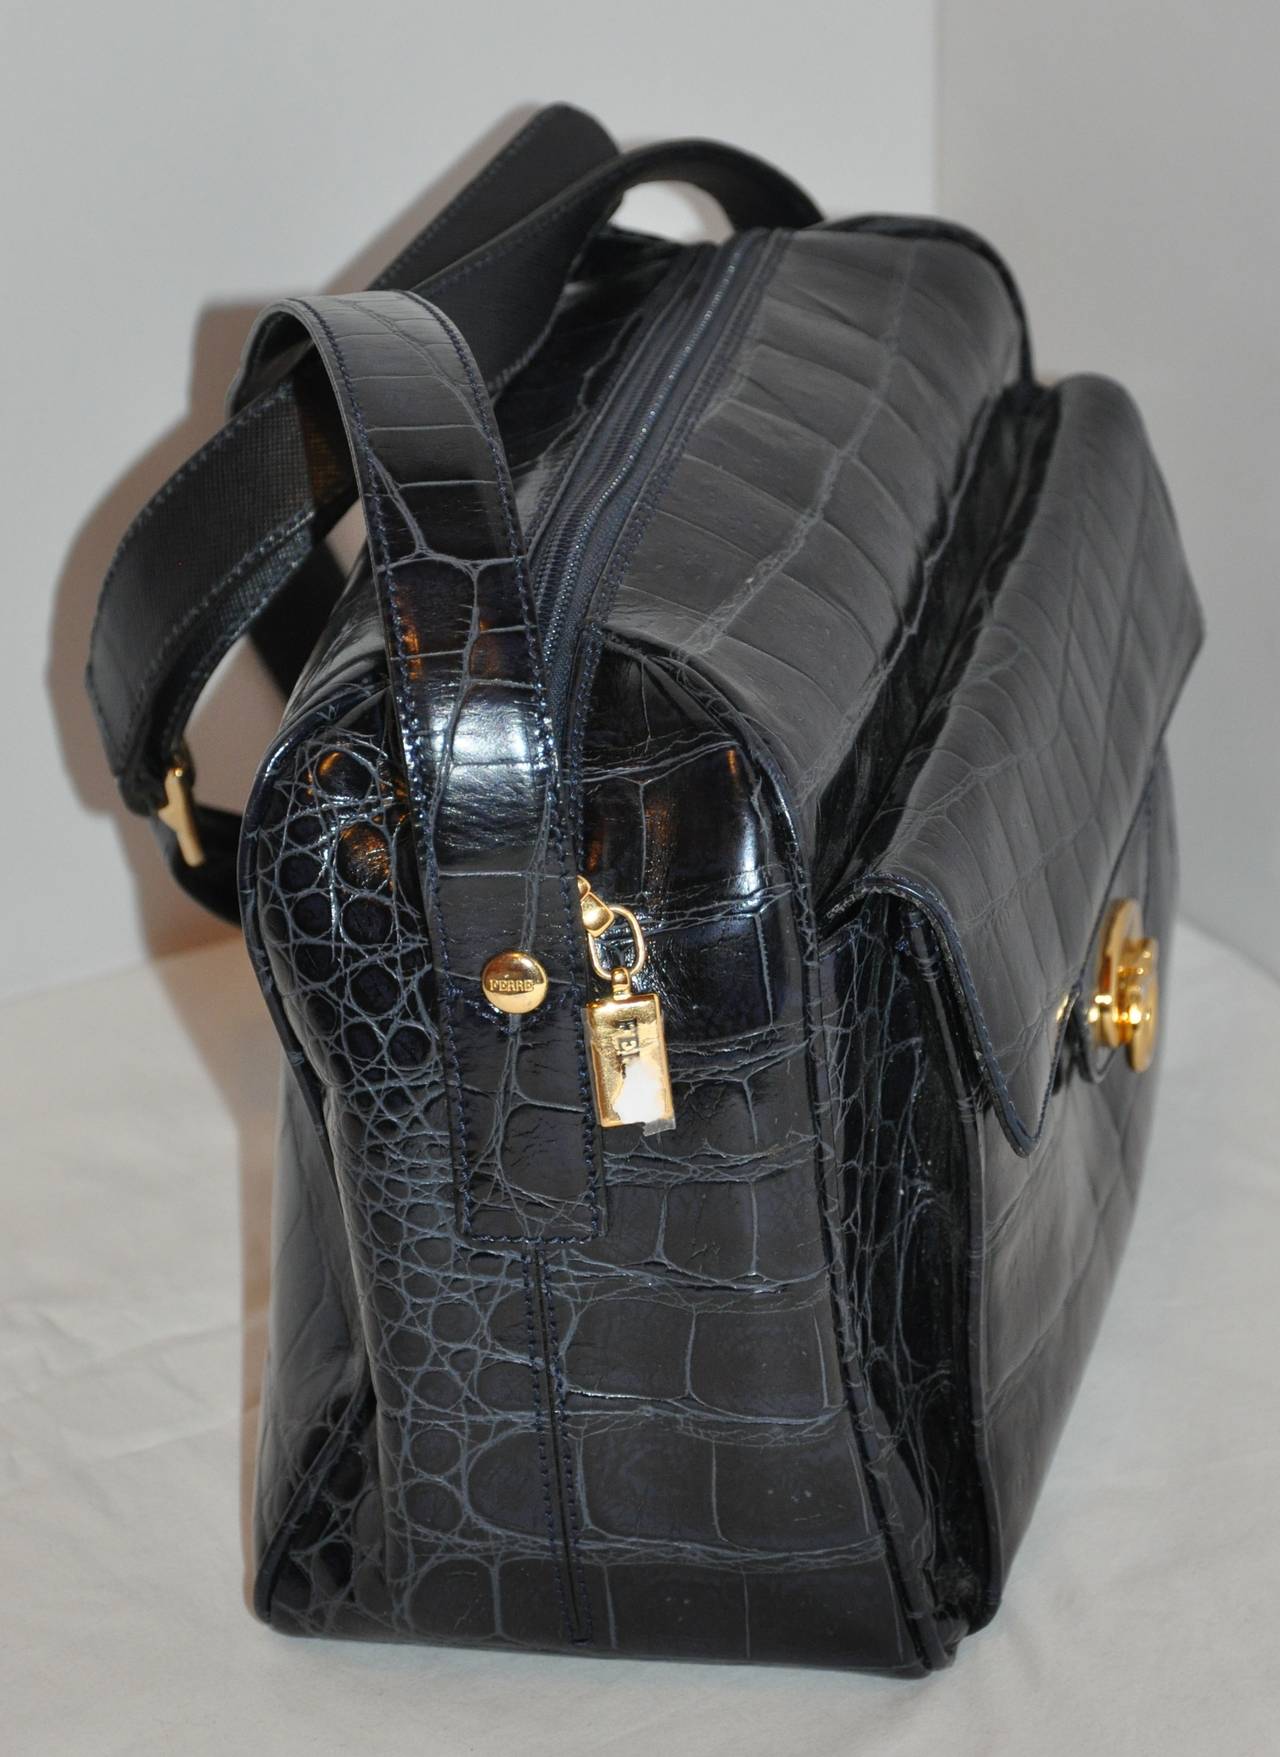 Gianfranco Ferre black croc-embossed calfskin leather zippered top shoulder bag has adjustable straps measuring 1